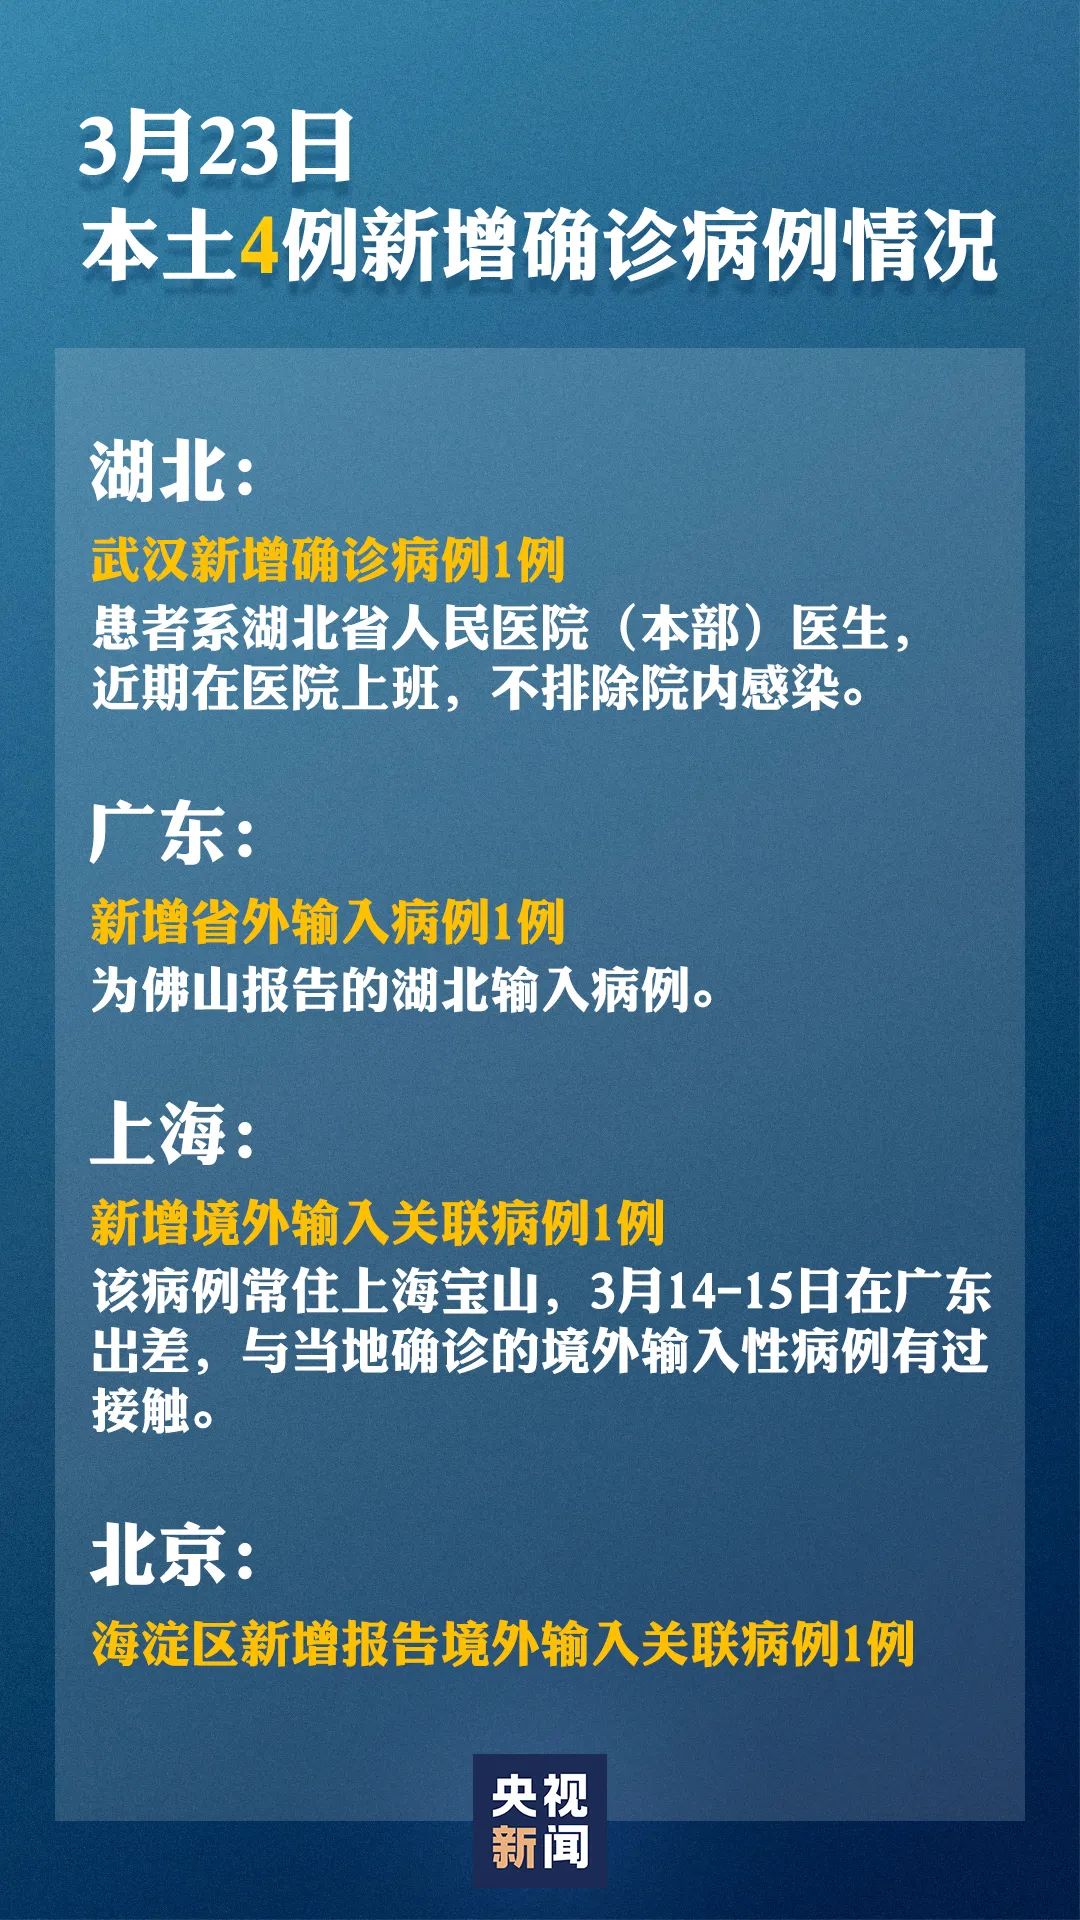 本土新增确诊4例详情公布 明起北京入境人员全部就地隔离做核酸检测